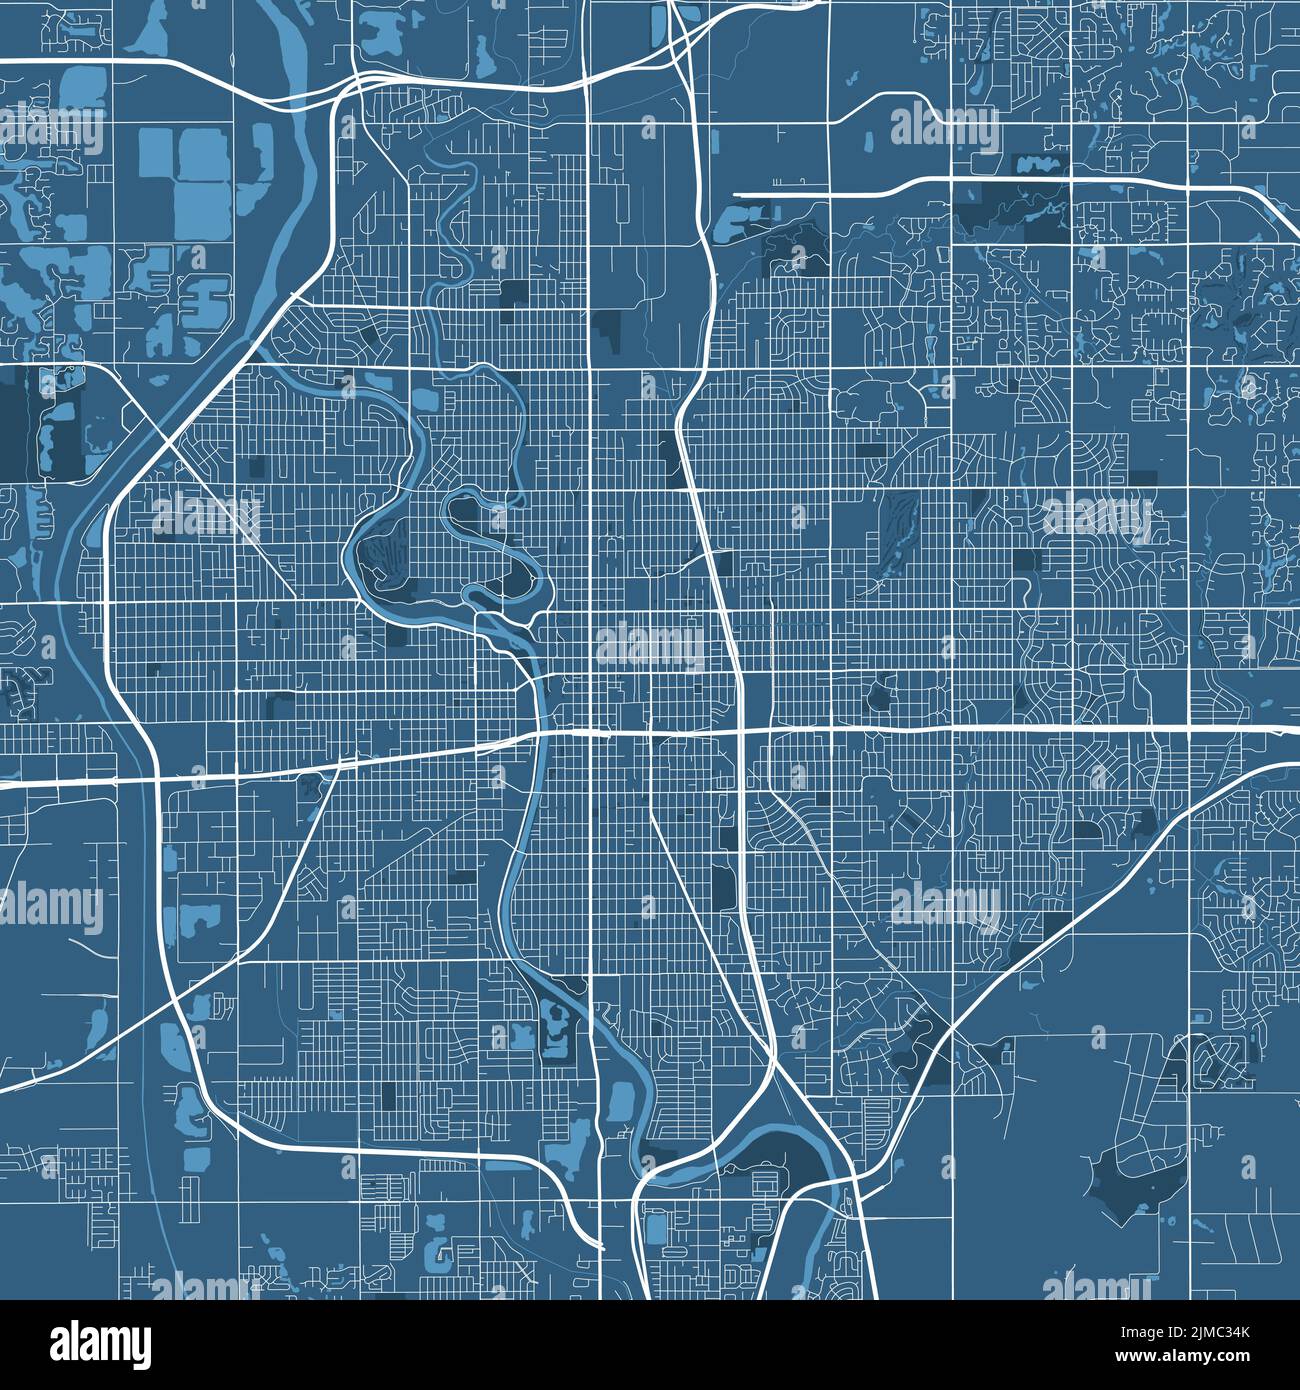 Detailliertes Vektor-Kartenplakat der Stadt Wichita, Kansas, Verwaltungsgebiet. Blaues Skyline-Panorama. Dekorative Grafik Touristenkarte von Wichita Gebiet. Roy Stock Vektor